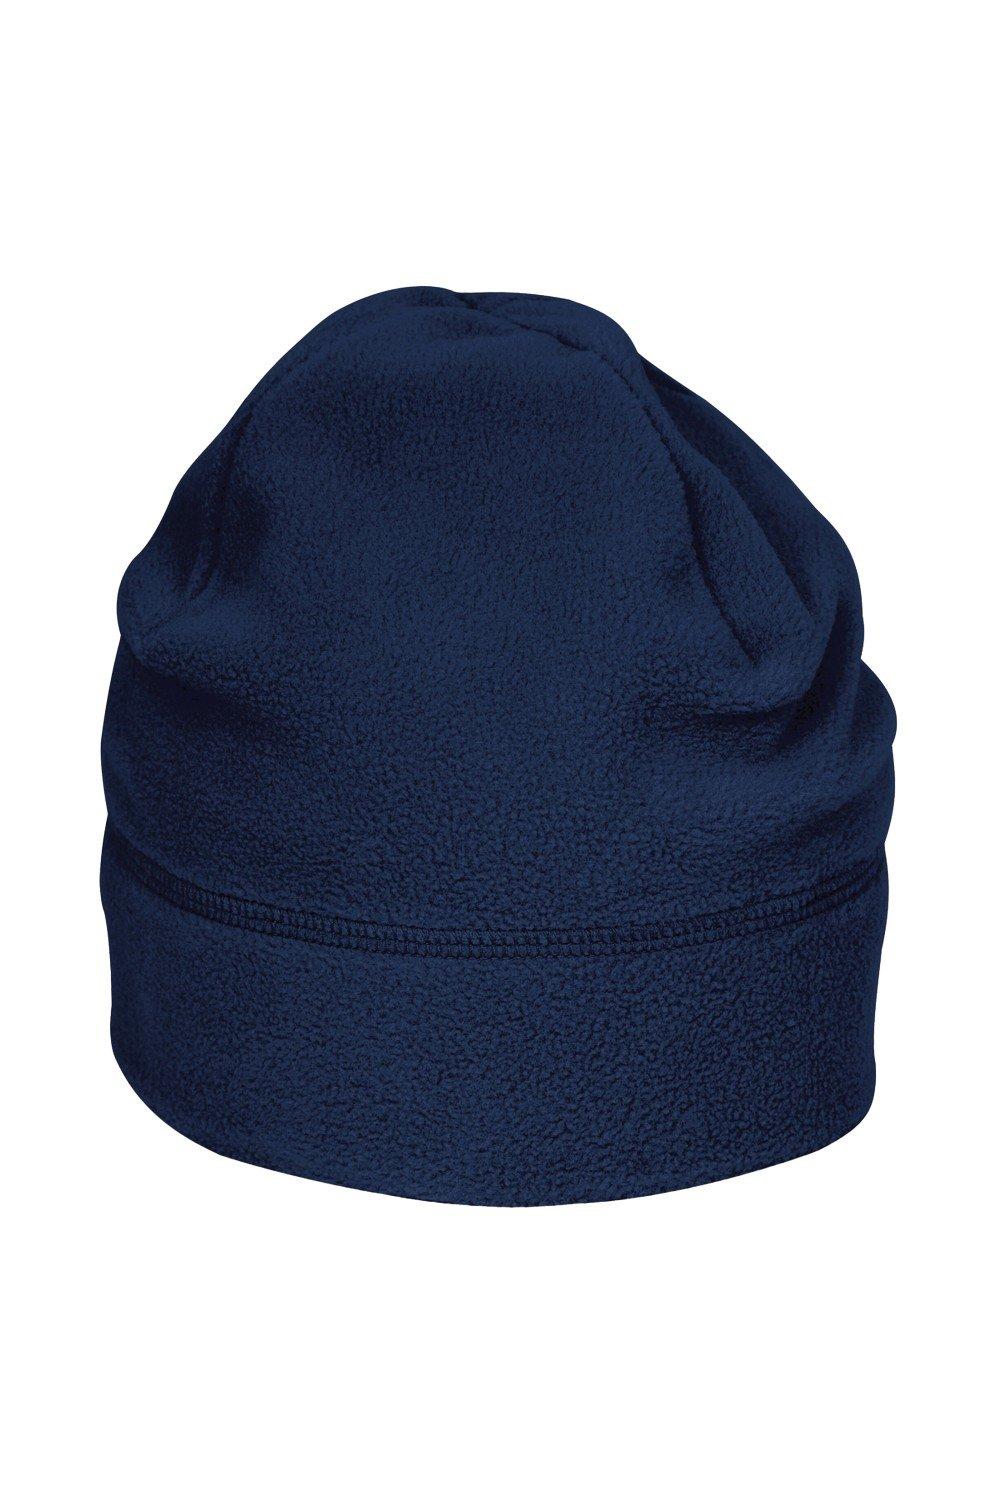 Флисовая шапка Summit Supa Beechfield, темно-синий